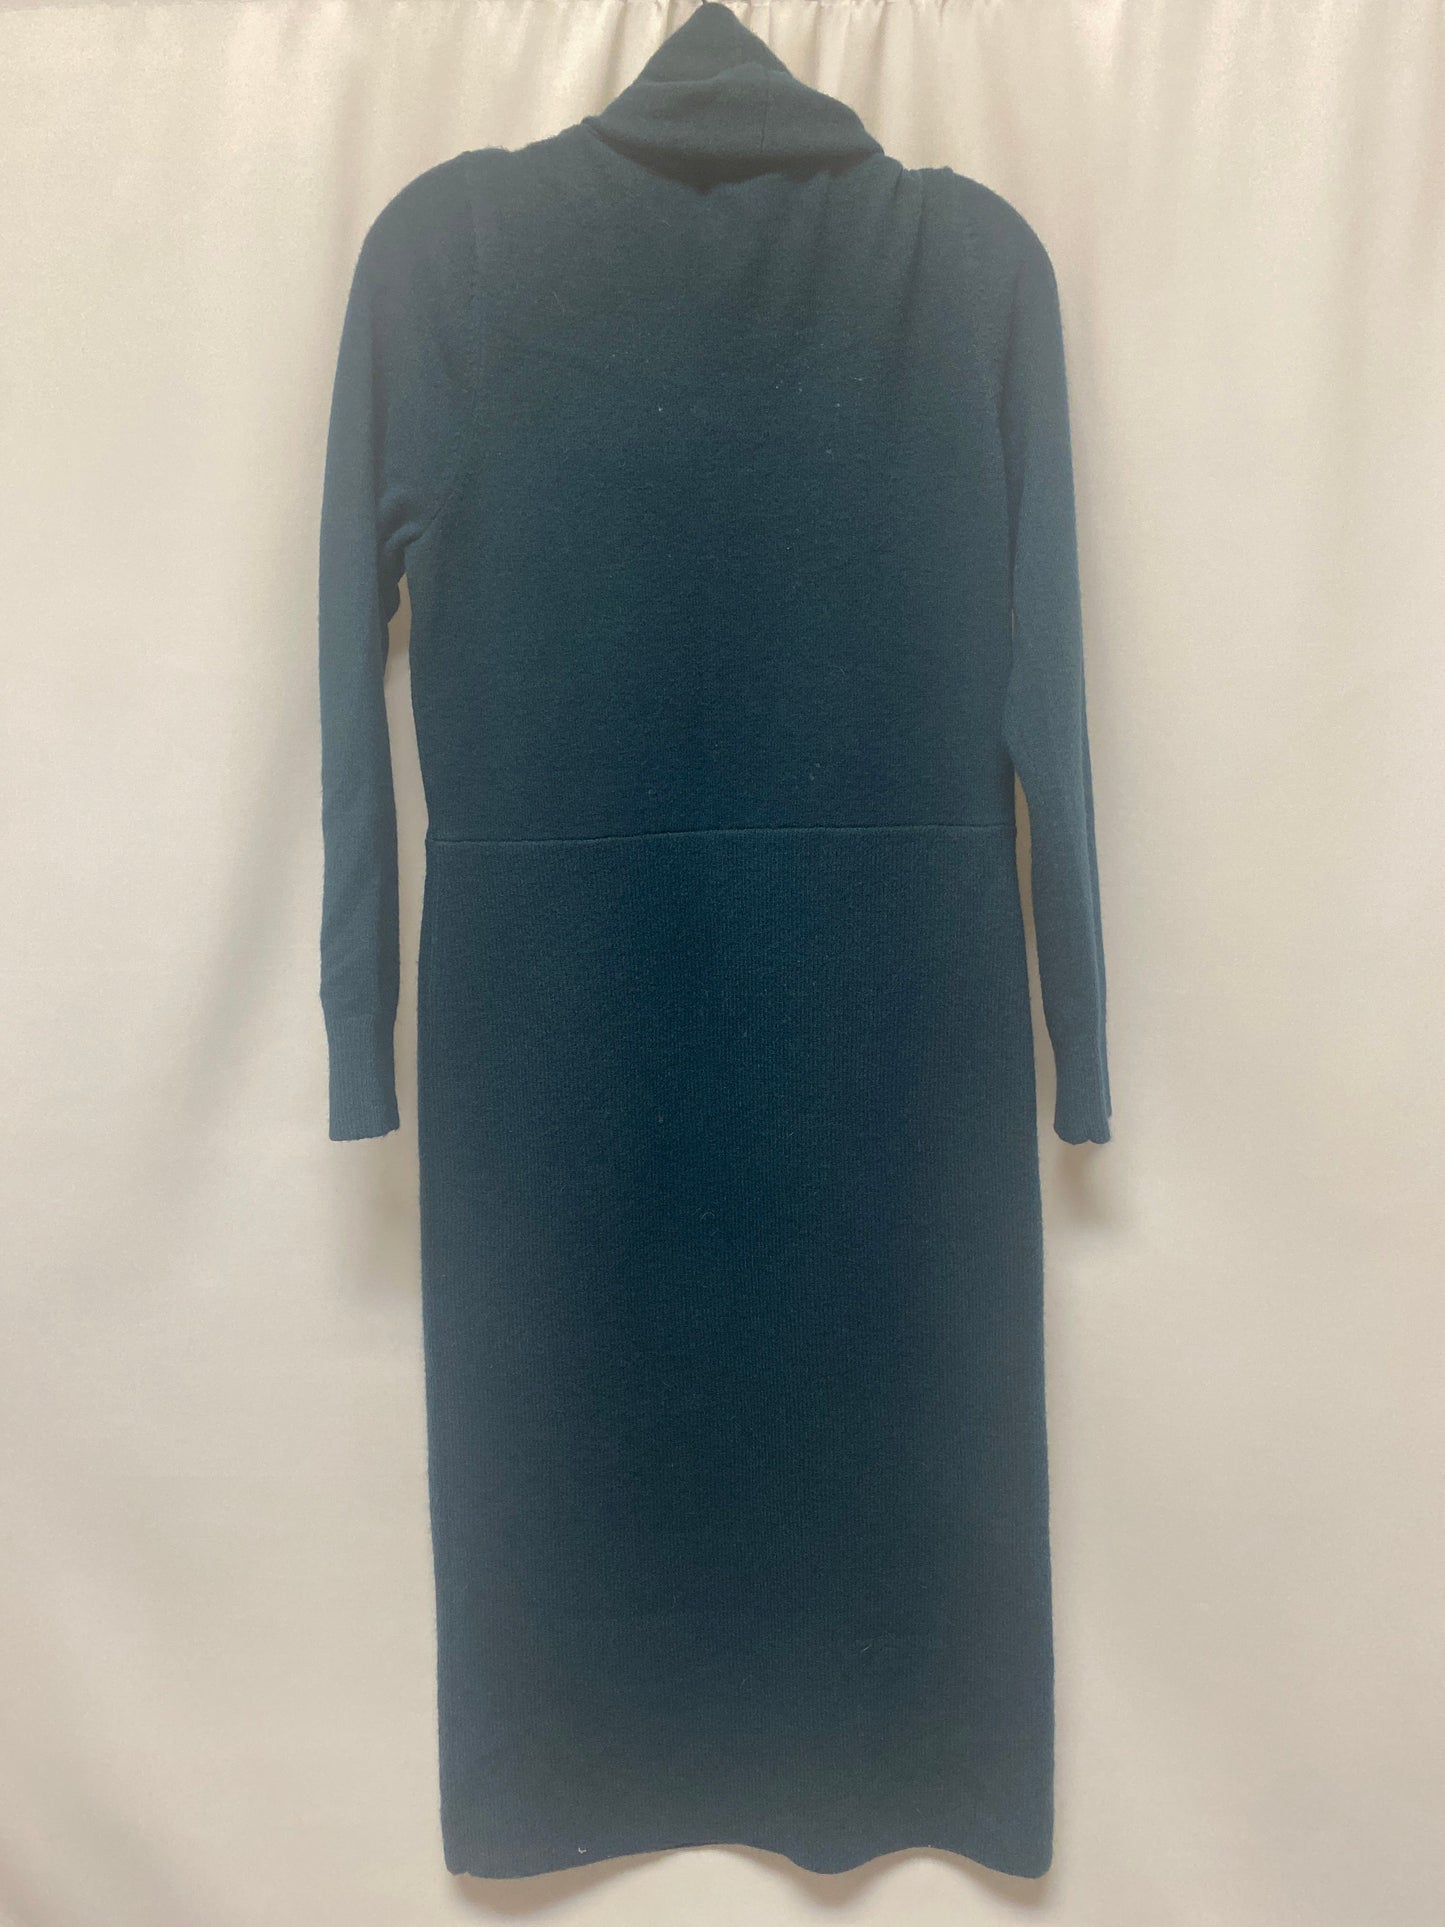 Blue Dress Casual Midi Ann Taylor, Size L